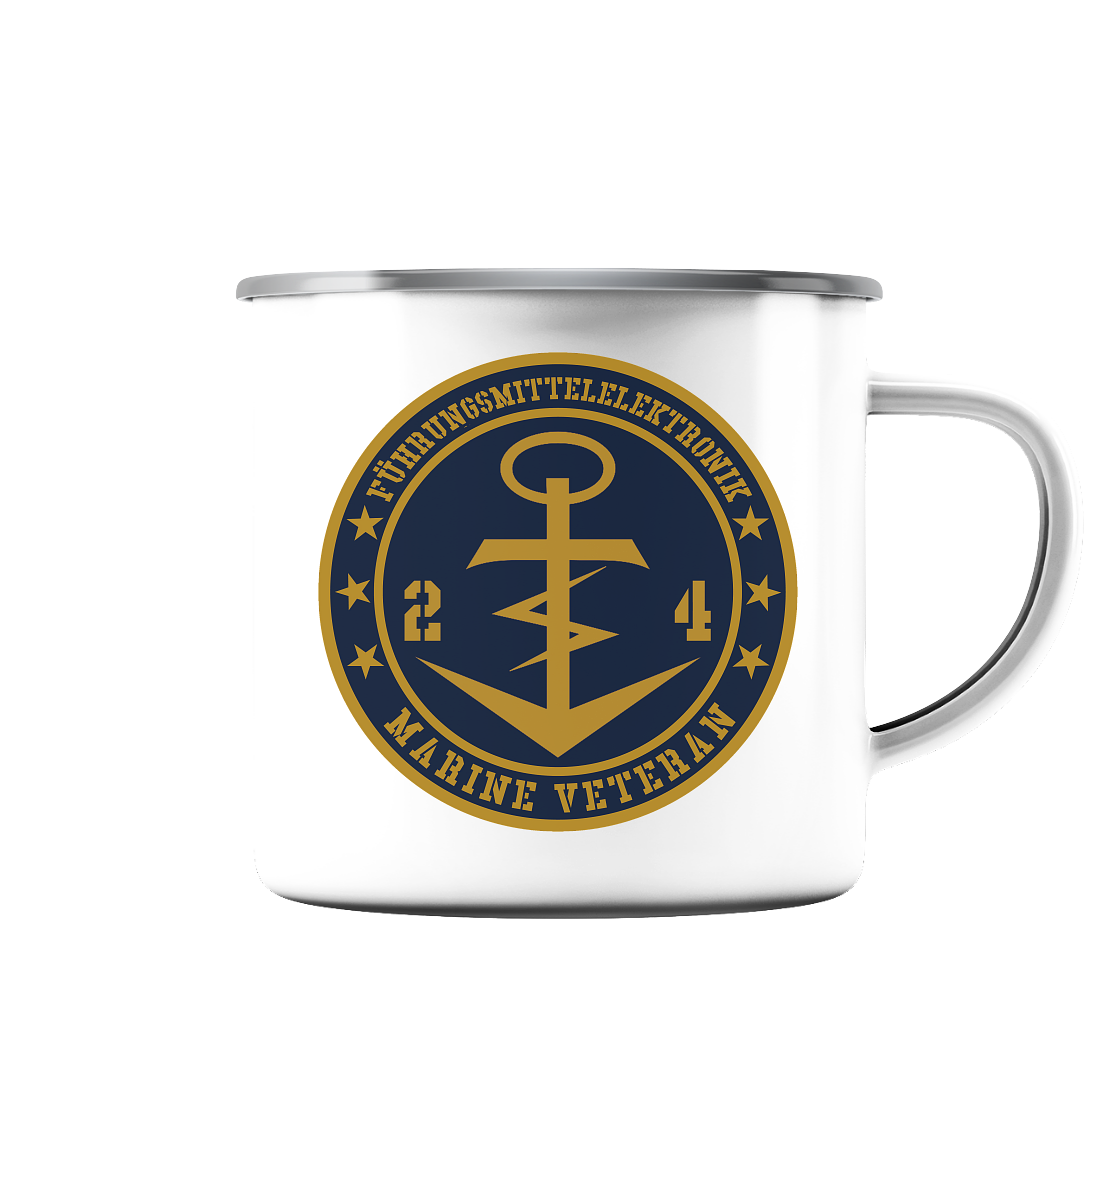 Marine Veteran 24er FÜHRUNGSMITTELELEKTRONIK - Emaille Tasse (Silber)